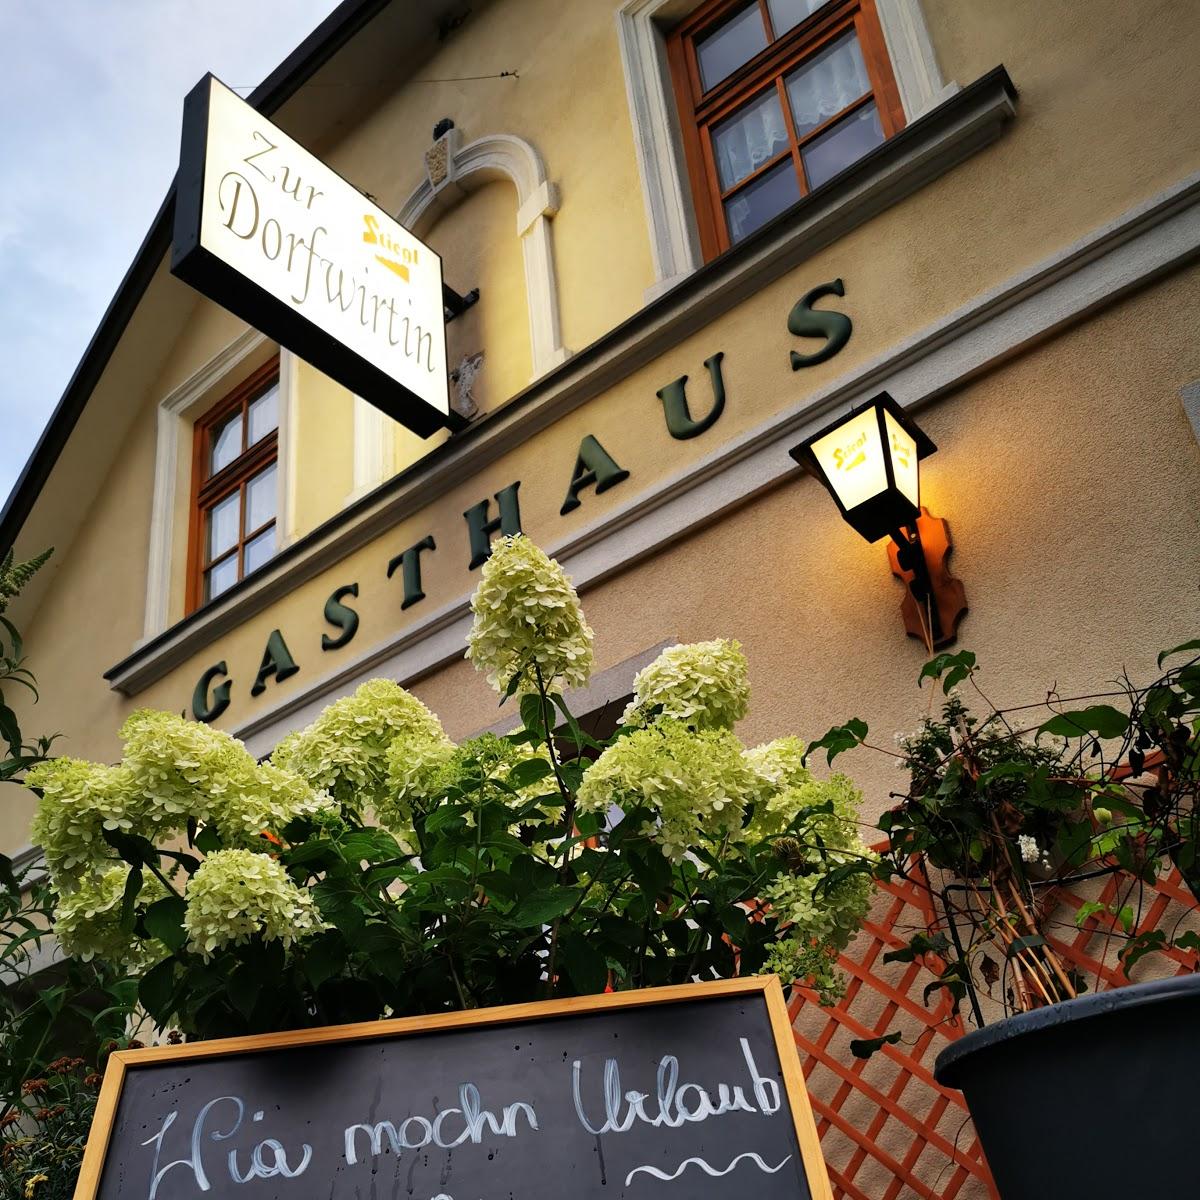 Restaurant "Gasthaus zur Dorfwirtin" in Alland